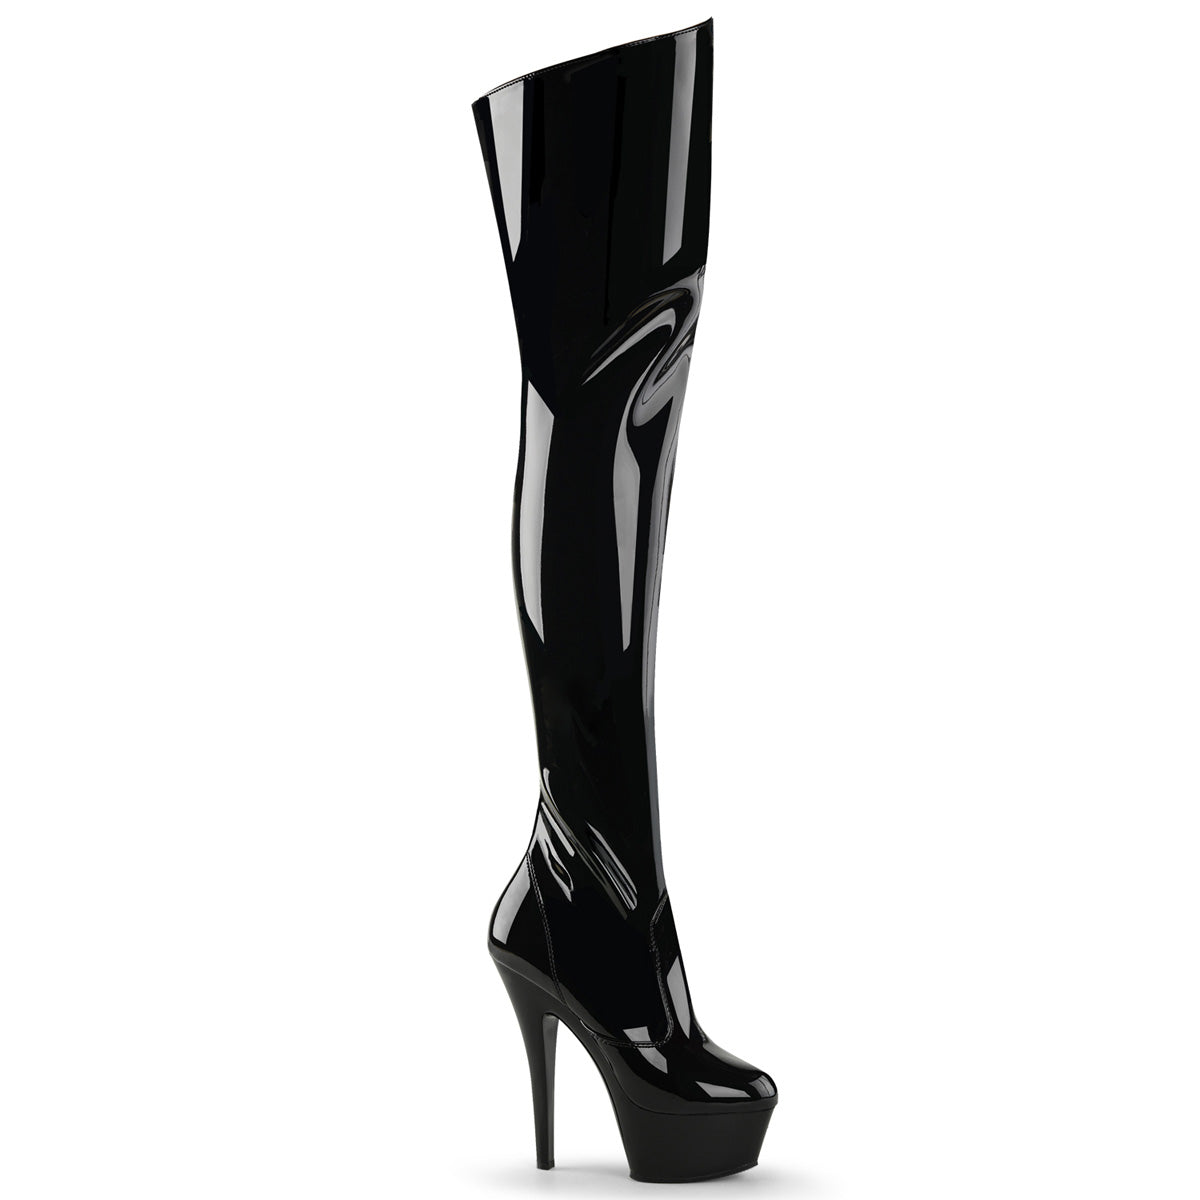 KISS-3010 Pleaser 6" Heel Black Patent Stripper Platform Thigh High Boots